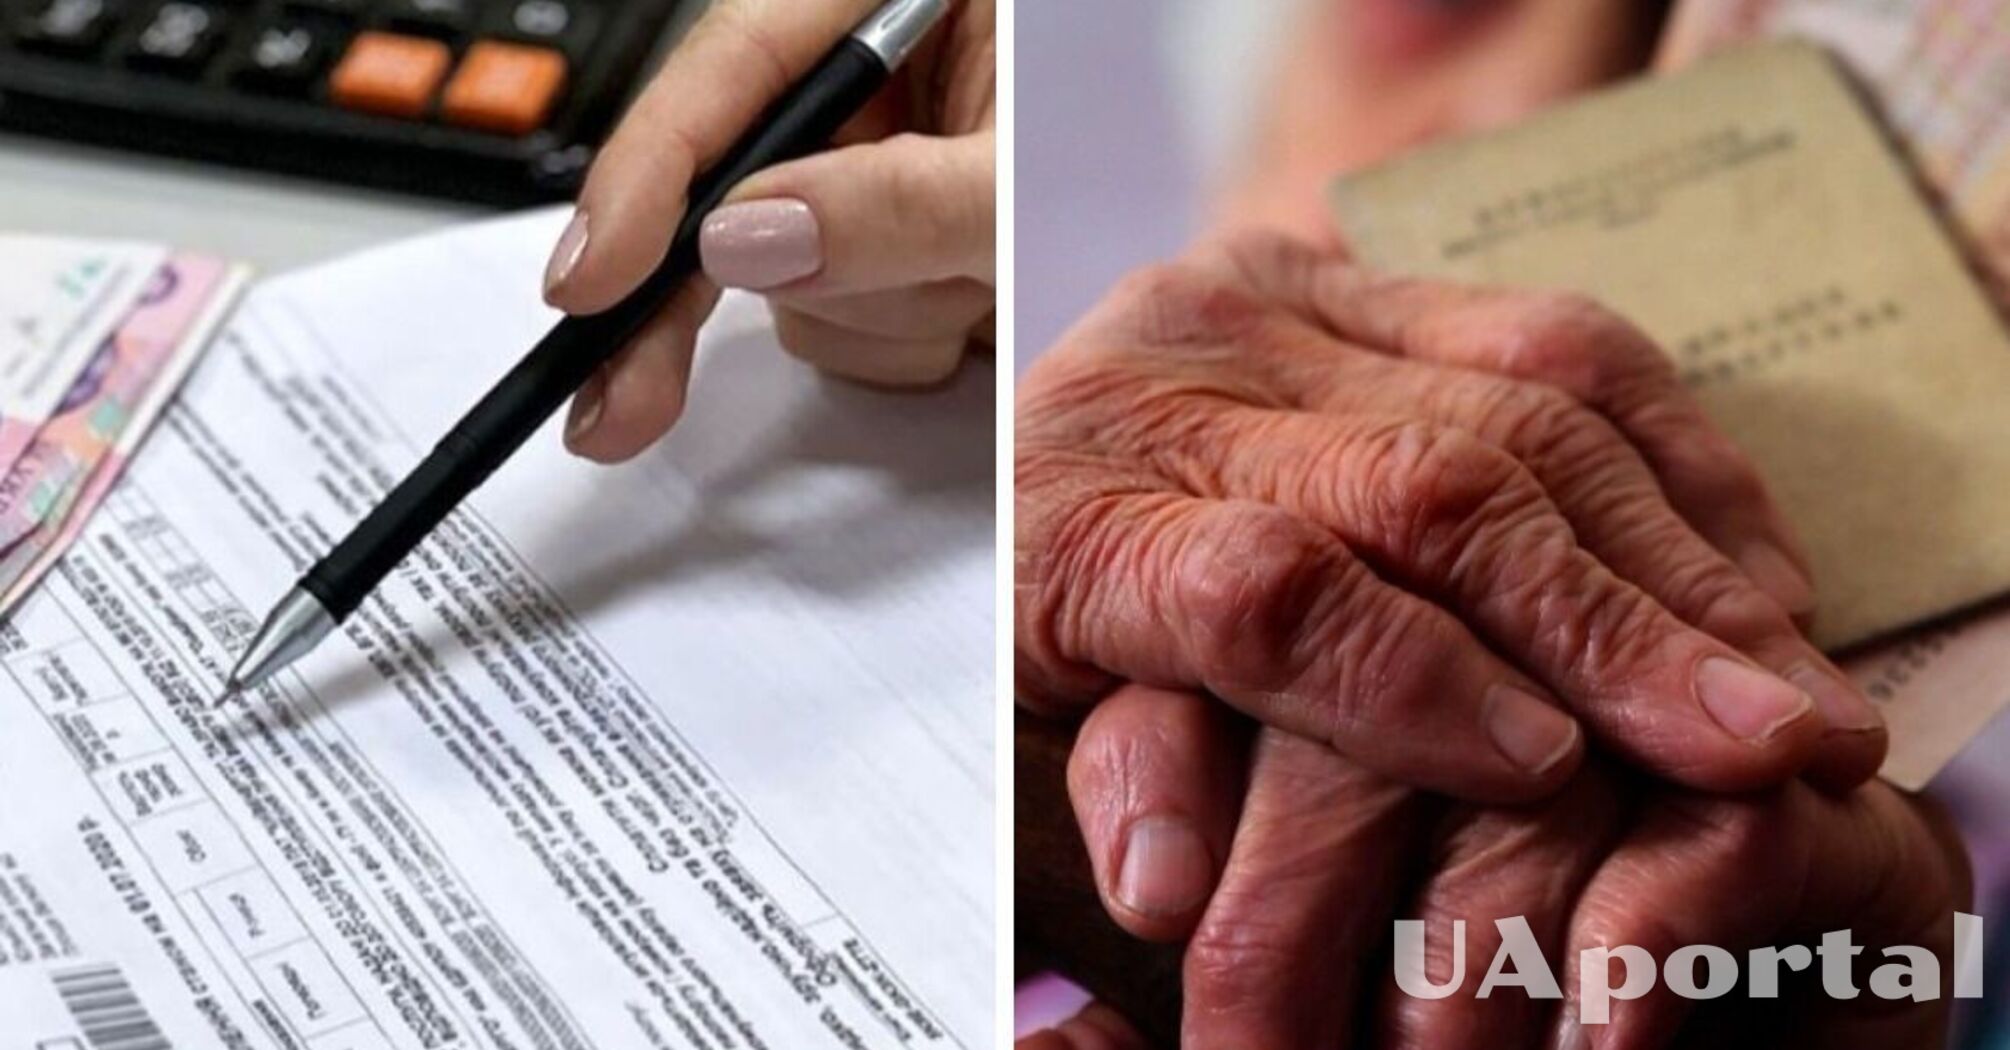 Какие документы нужны для оформления субсидии неработающему пенсионеру